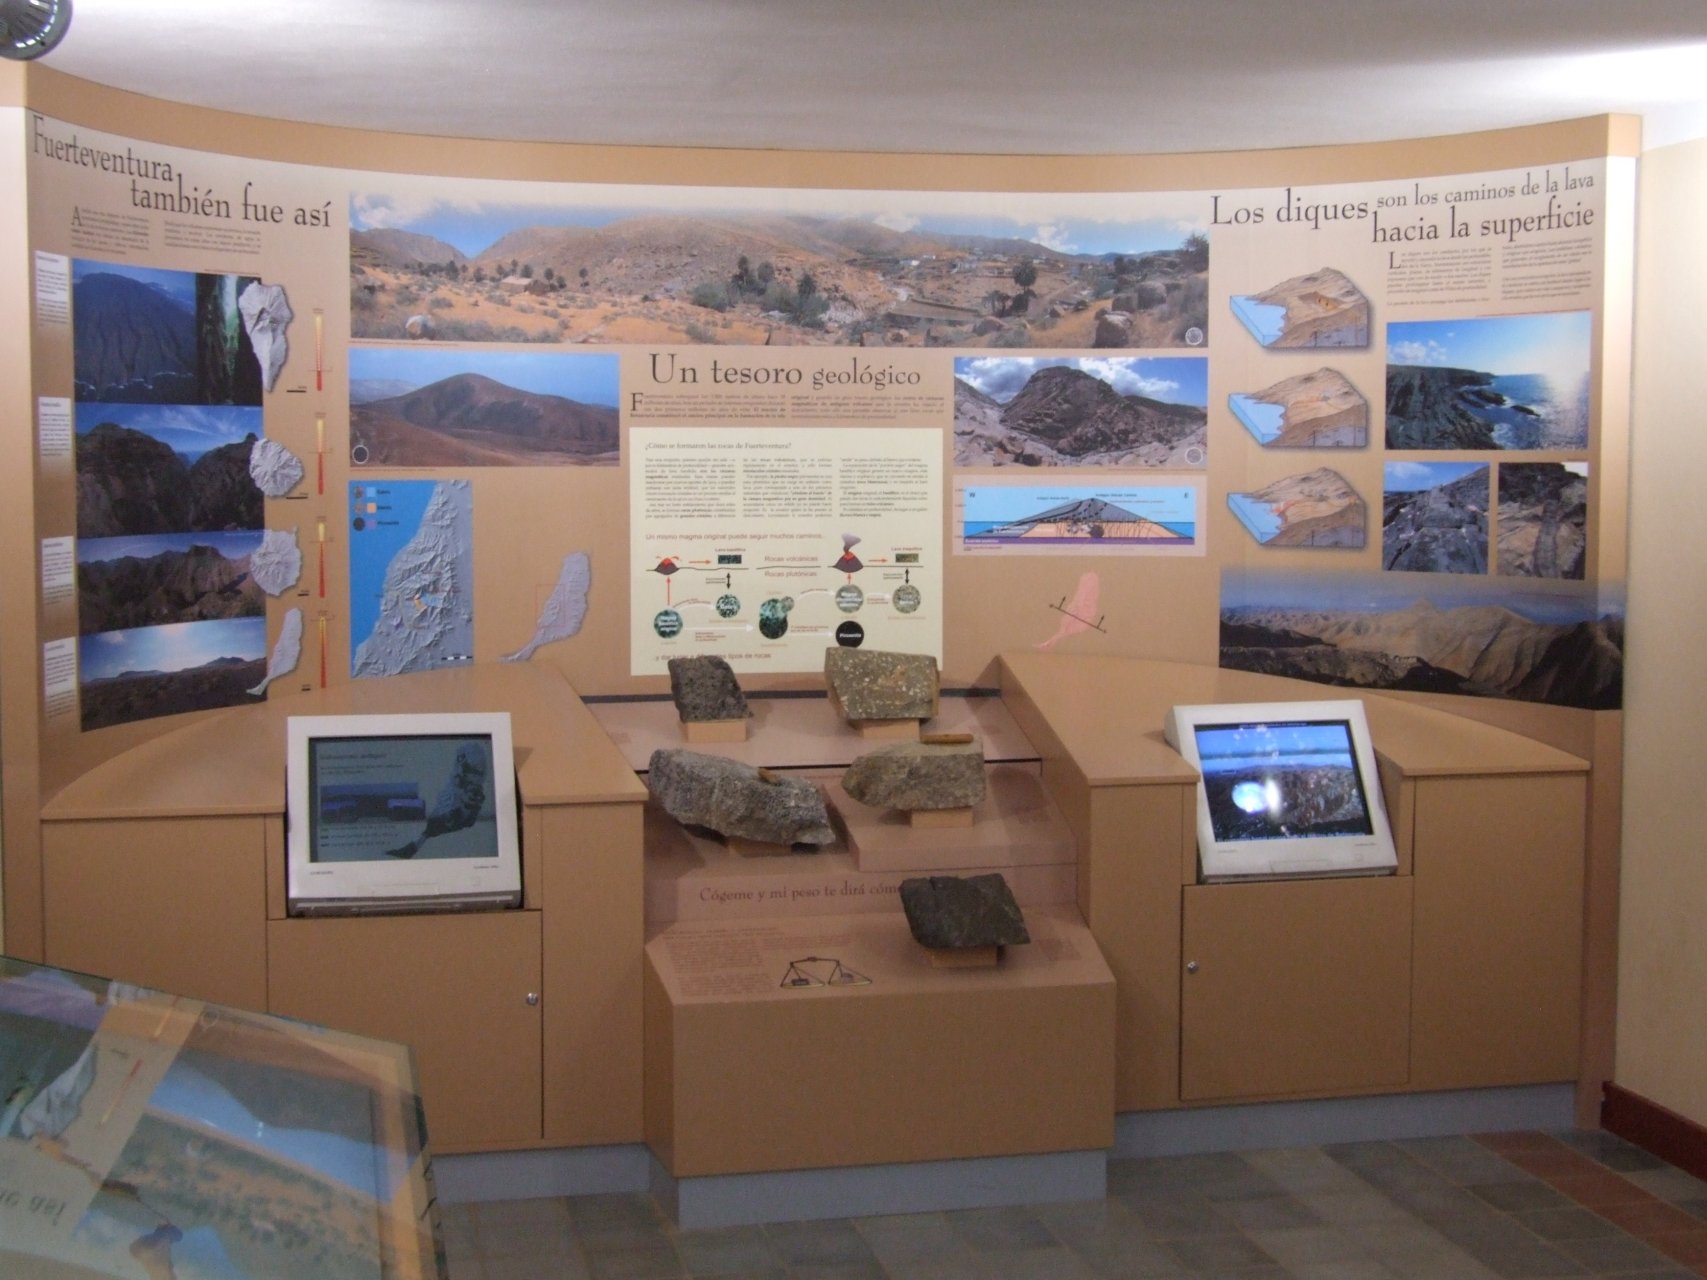 Ekspozycja przedstawiająca geologię wyspy